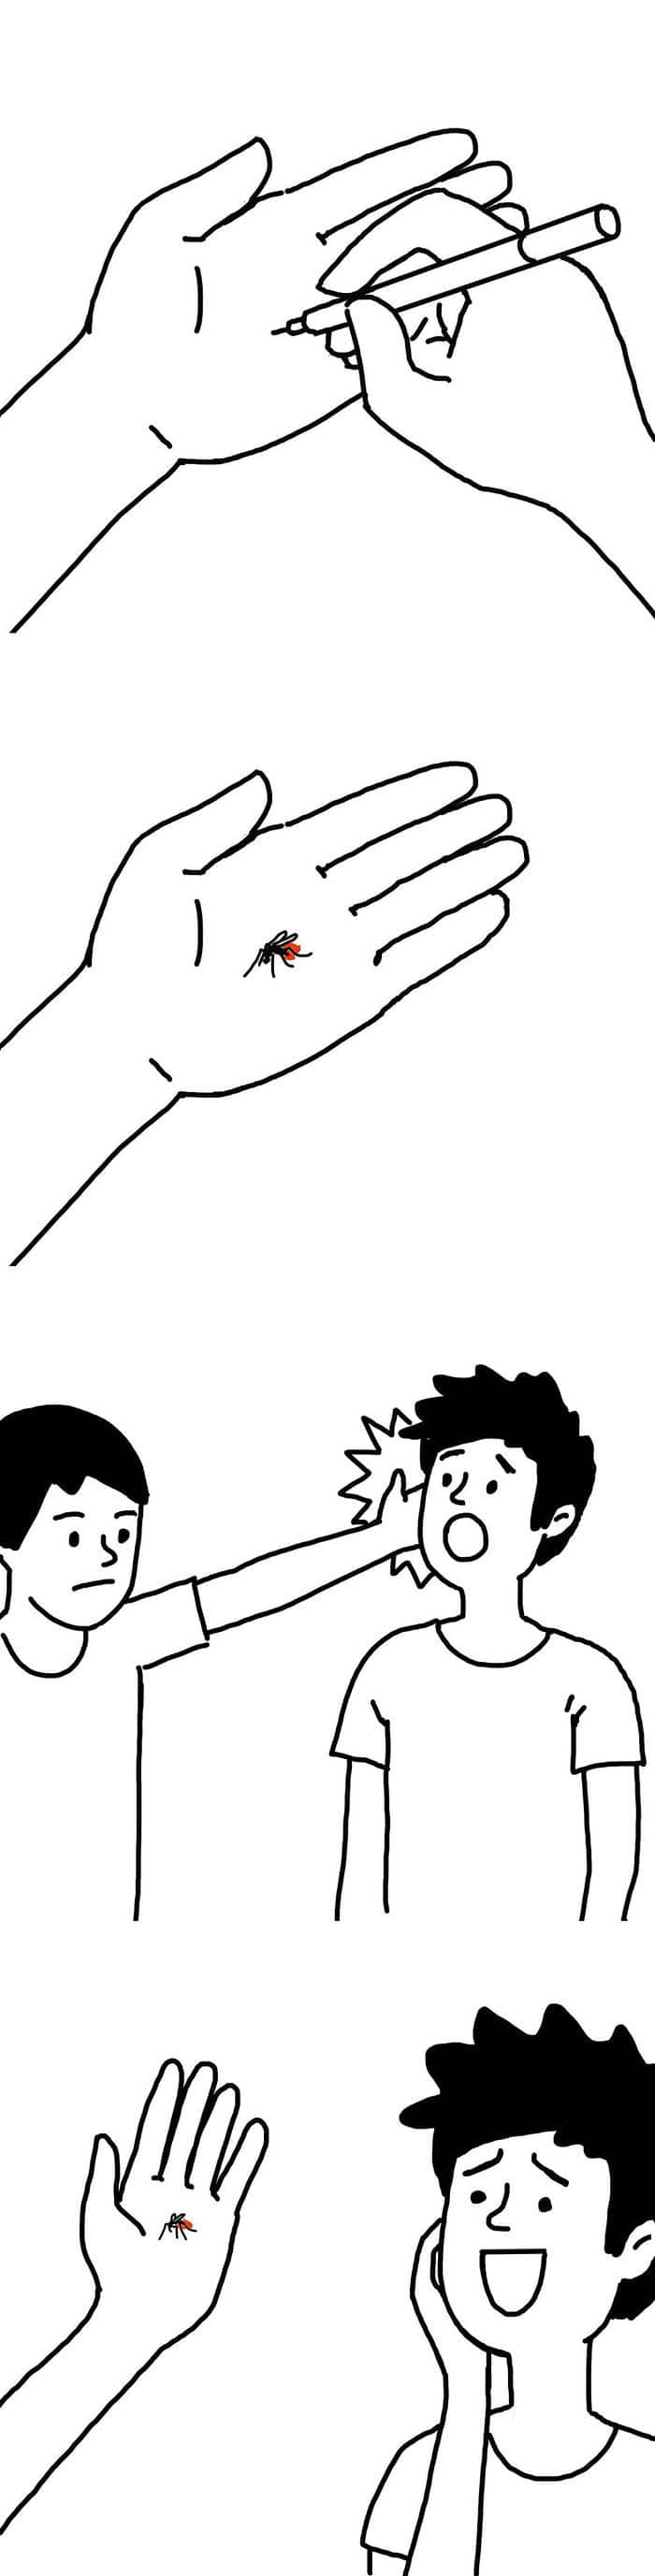 Artista chinês desenha quadrinhos engraçados com reviravoltas surpresa (35 fotos) 35